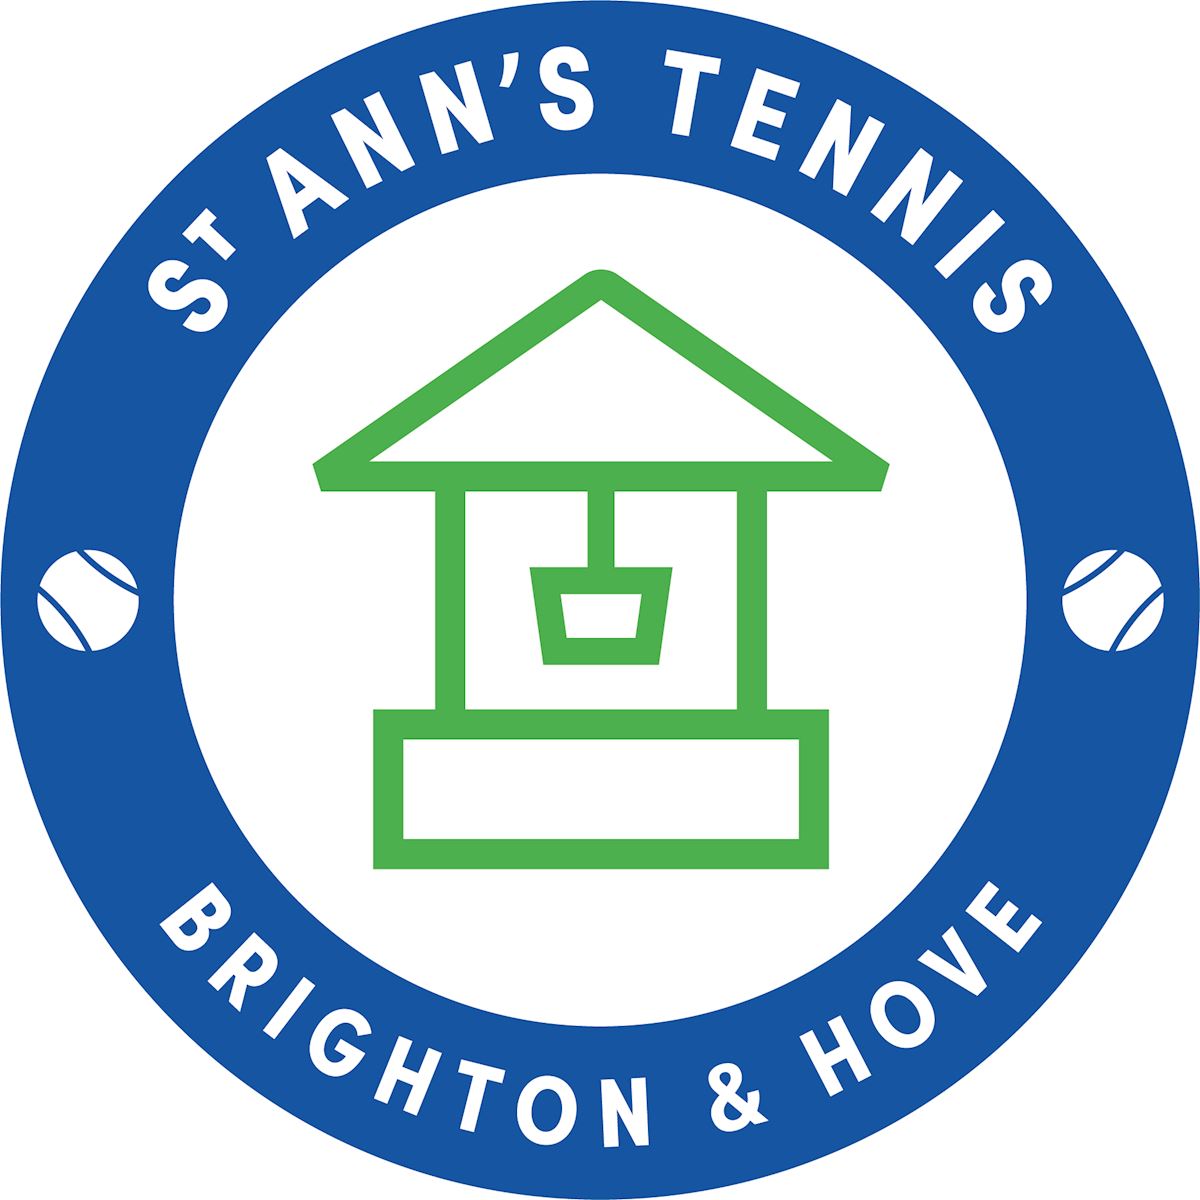 St Ann's Tennis